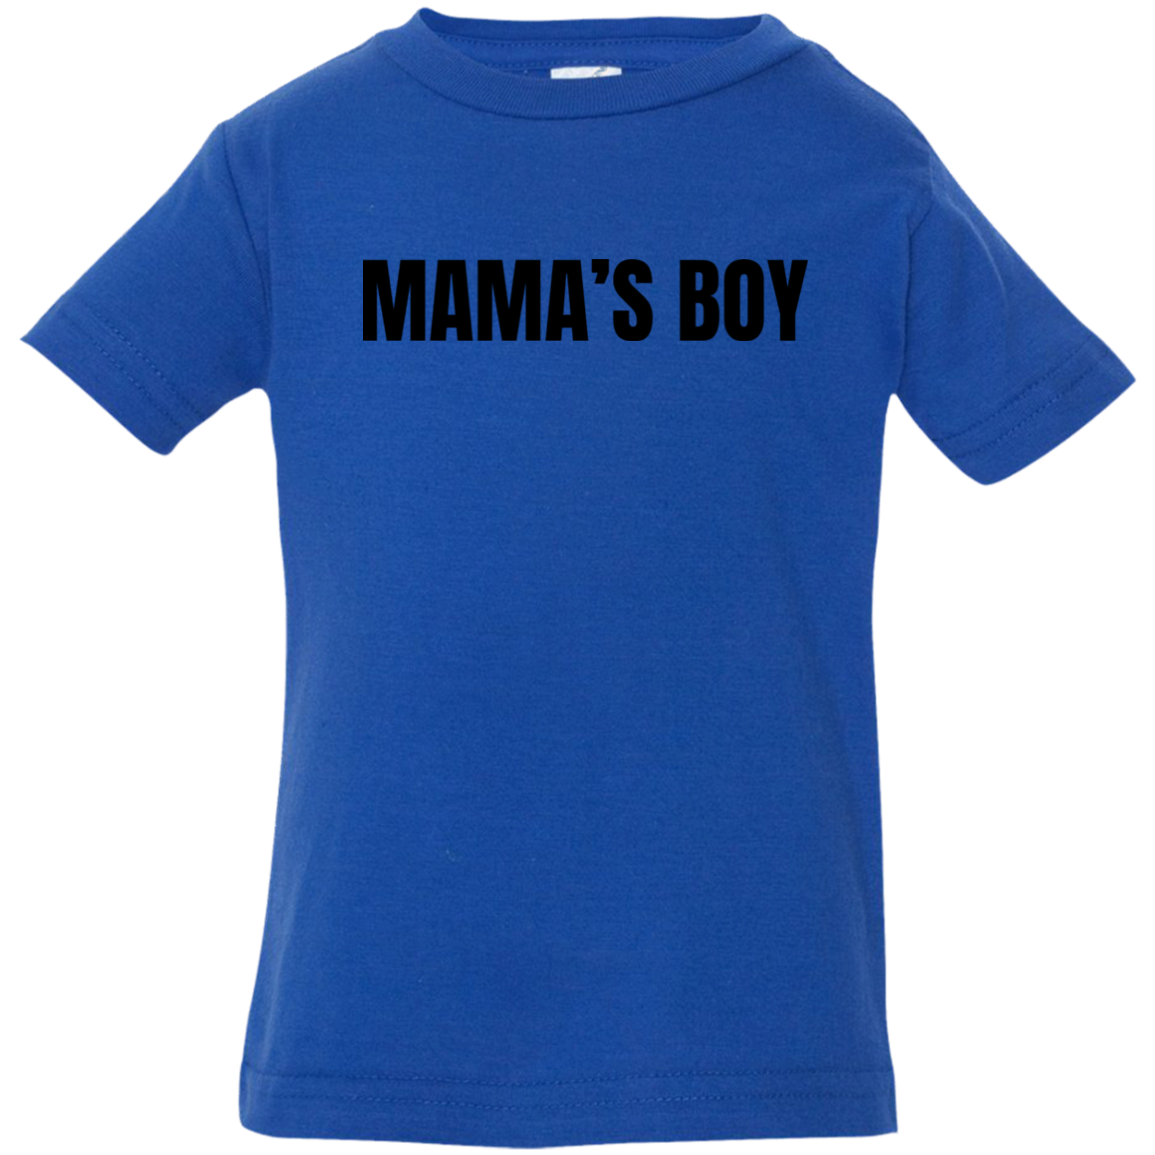 Mama's Boy - 6, 12, 18, & 24 Month Boy's Jersey T-Shirt